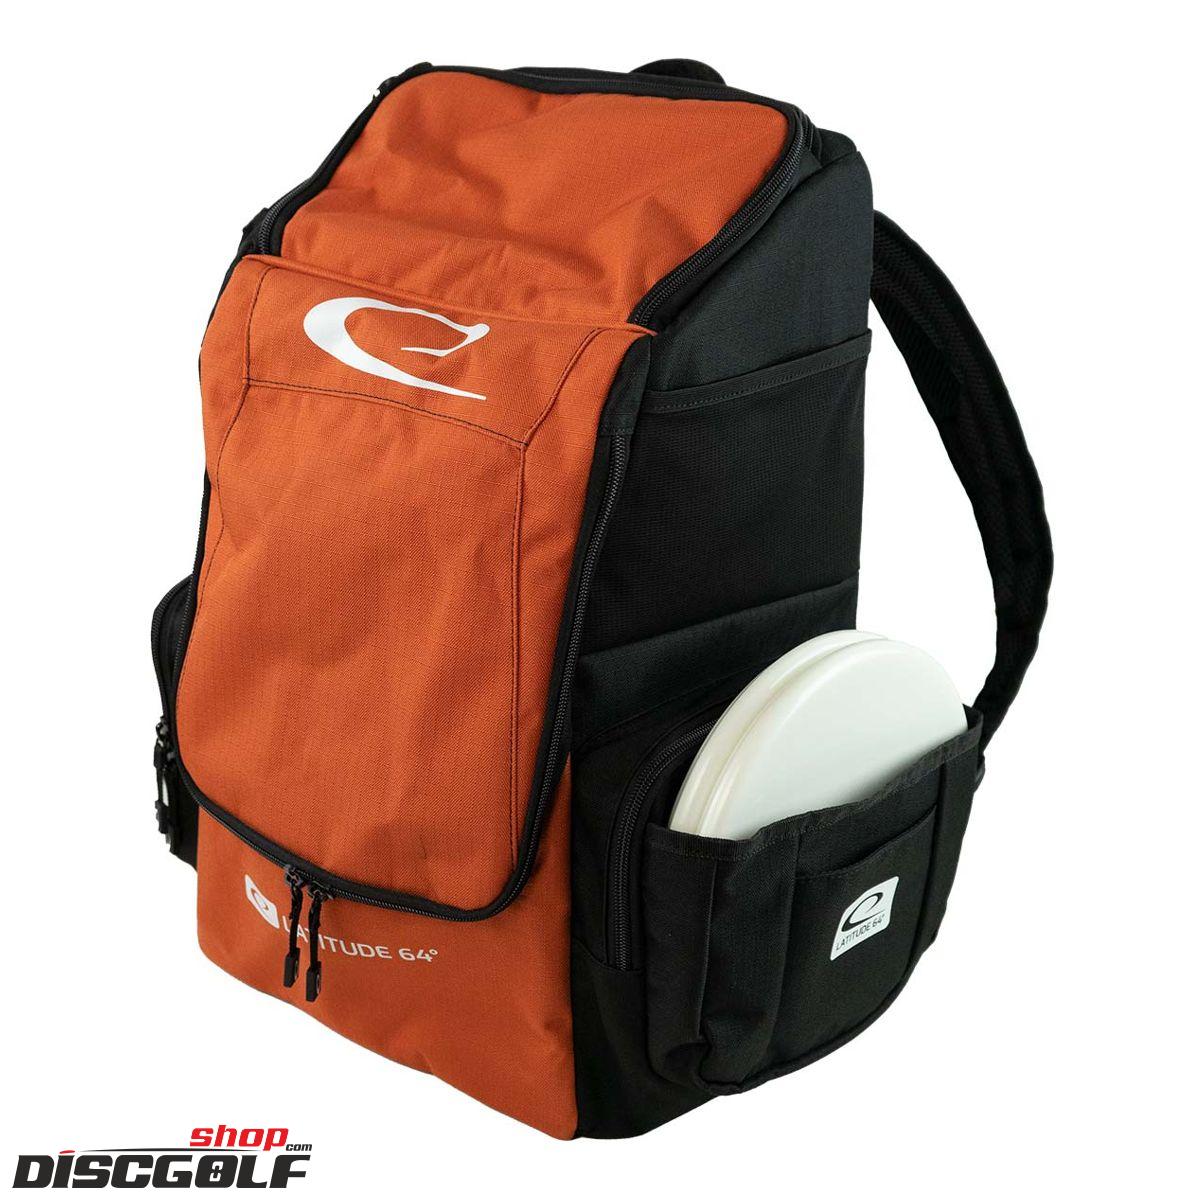 Latitude 64º Core Pro E2 Backpack - Černo-oranžová/Black-Blaze-orange (discgolf)